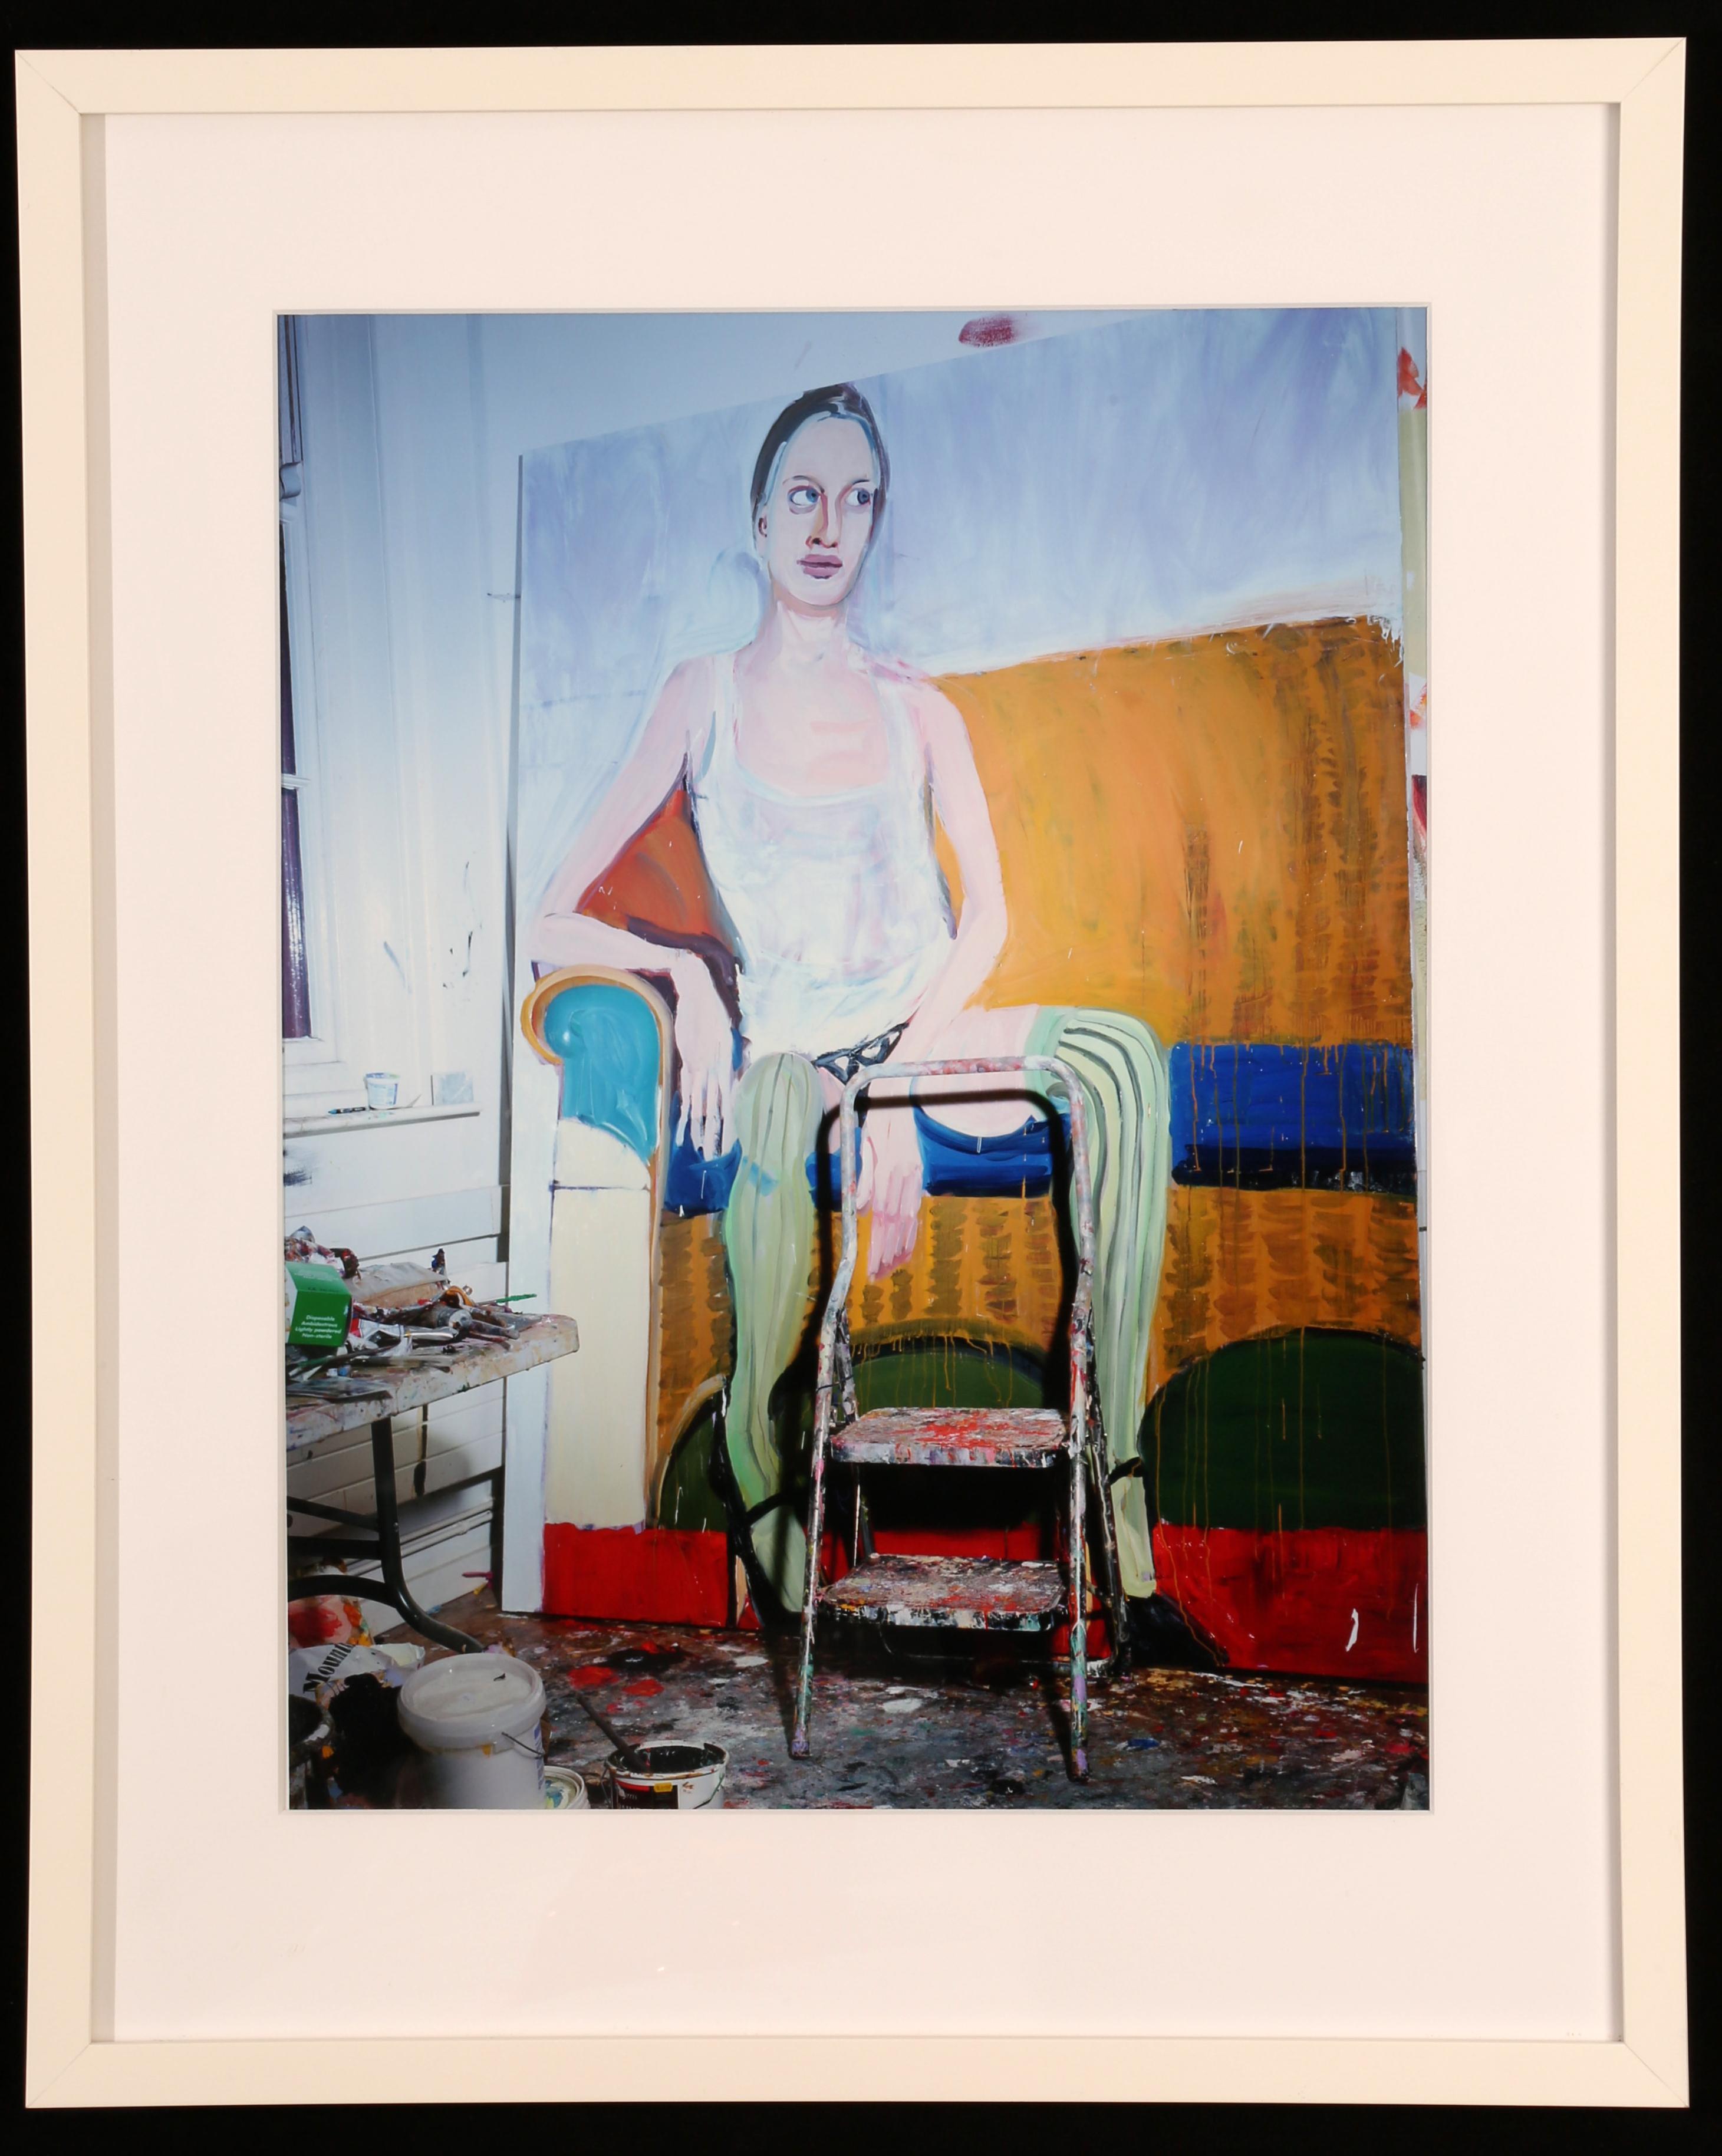 Miles Aldridge
Kristen, peinture de Chantal Joffe (de la série Kristen), 2010
Tirage lambda sur papier vélin photographique
Dimensions du cadre : 23.62 x 19.69 x 1.18 pouces  (60 x 50 x 3 cm)
Edition de 60